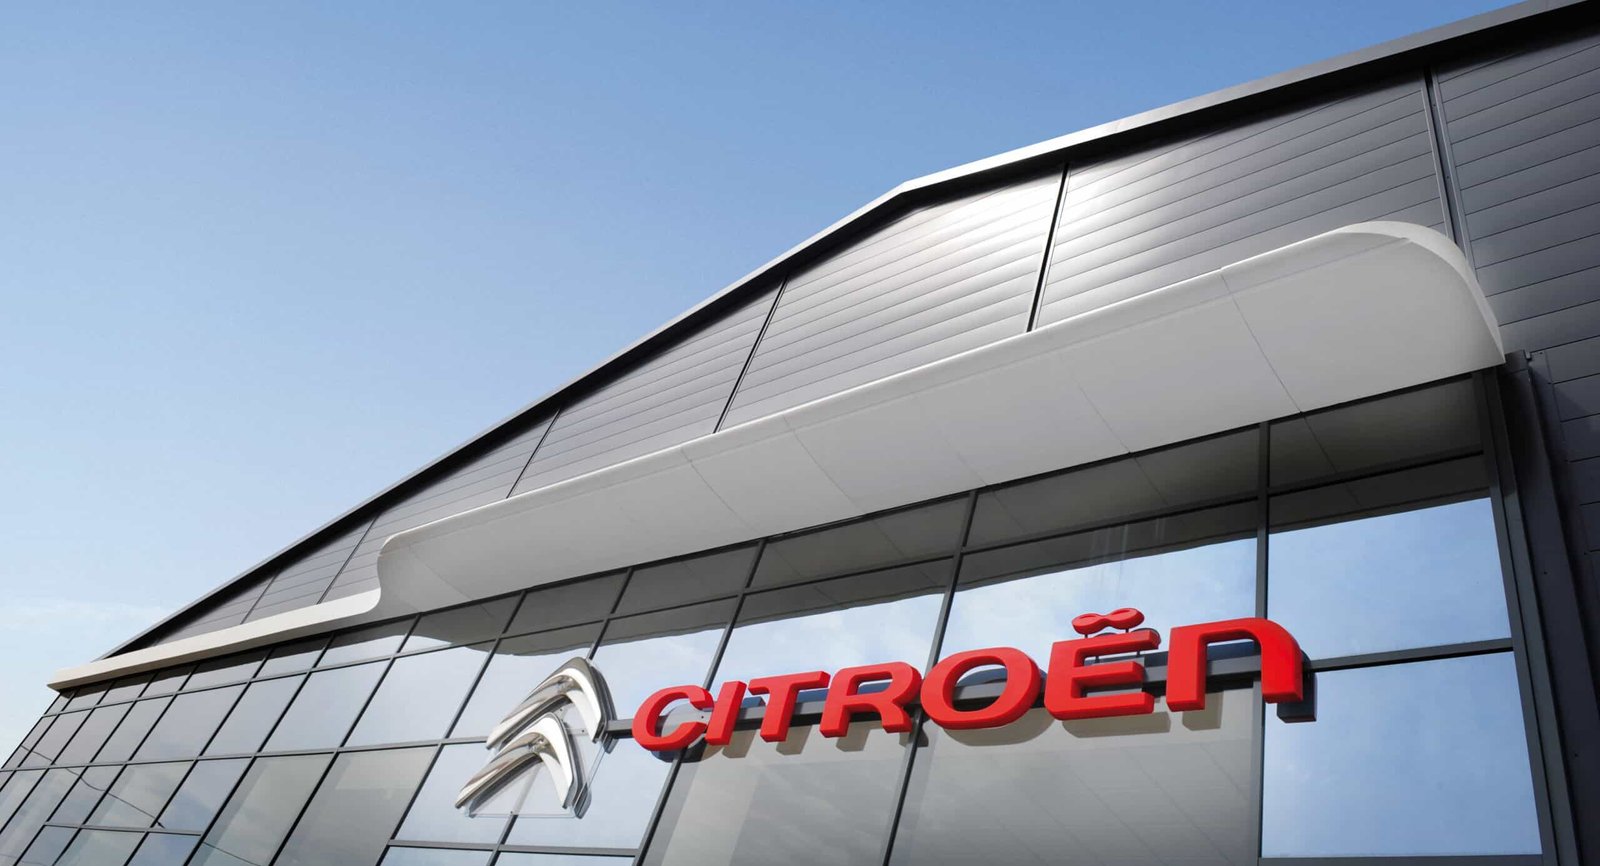 Cela peut prendre plus d'un an à une marque bien gérée comme Citroën pour mettre en œuvre une marque renouvelée à travers tous les points de contact avec les clients.